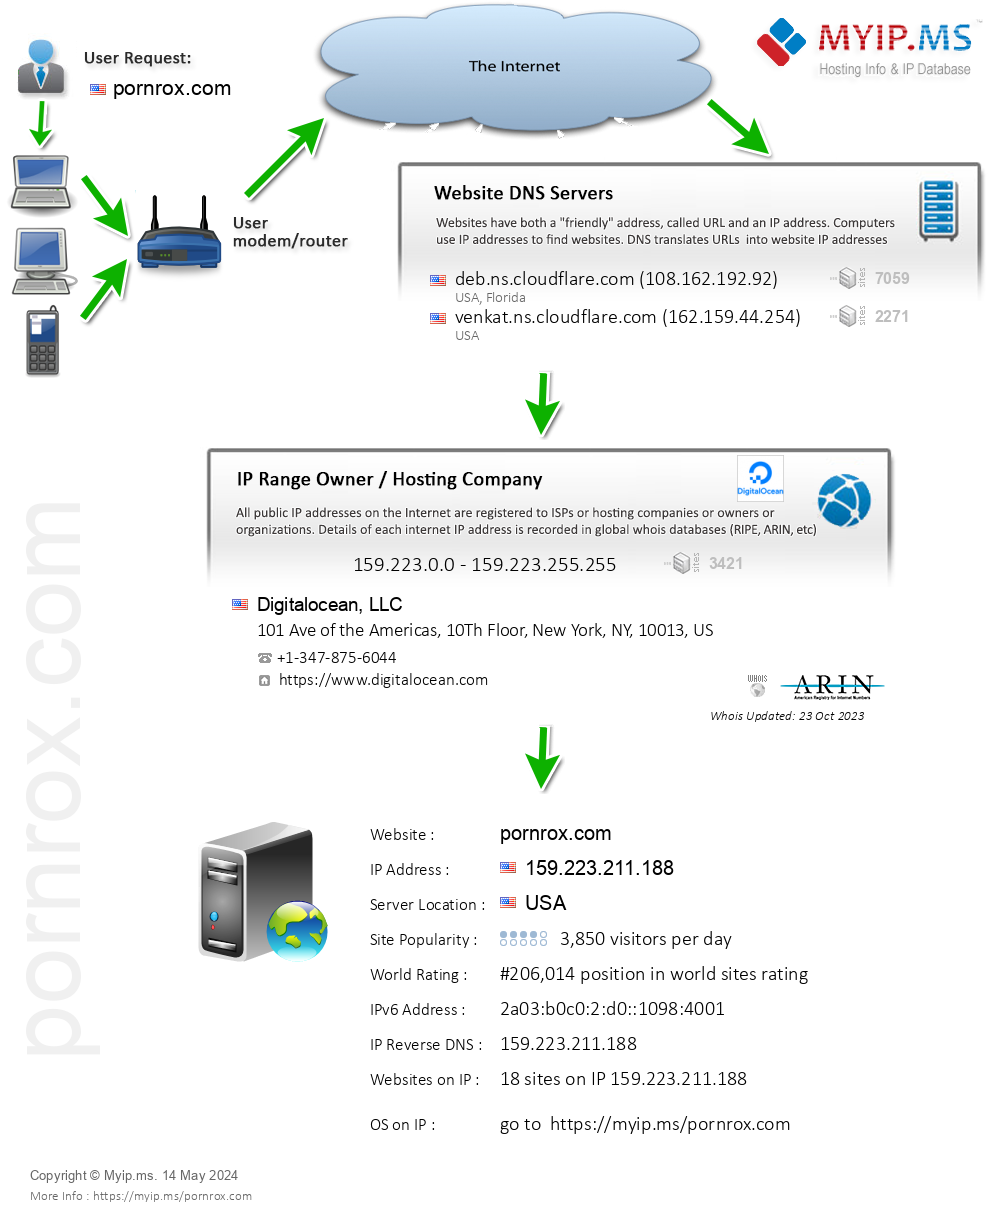 Pornrox.com - Website Hosting Visual IP Diagram